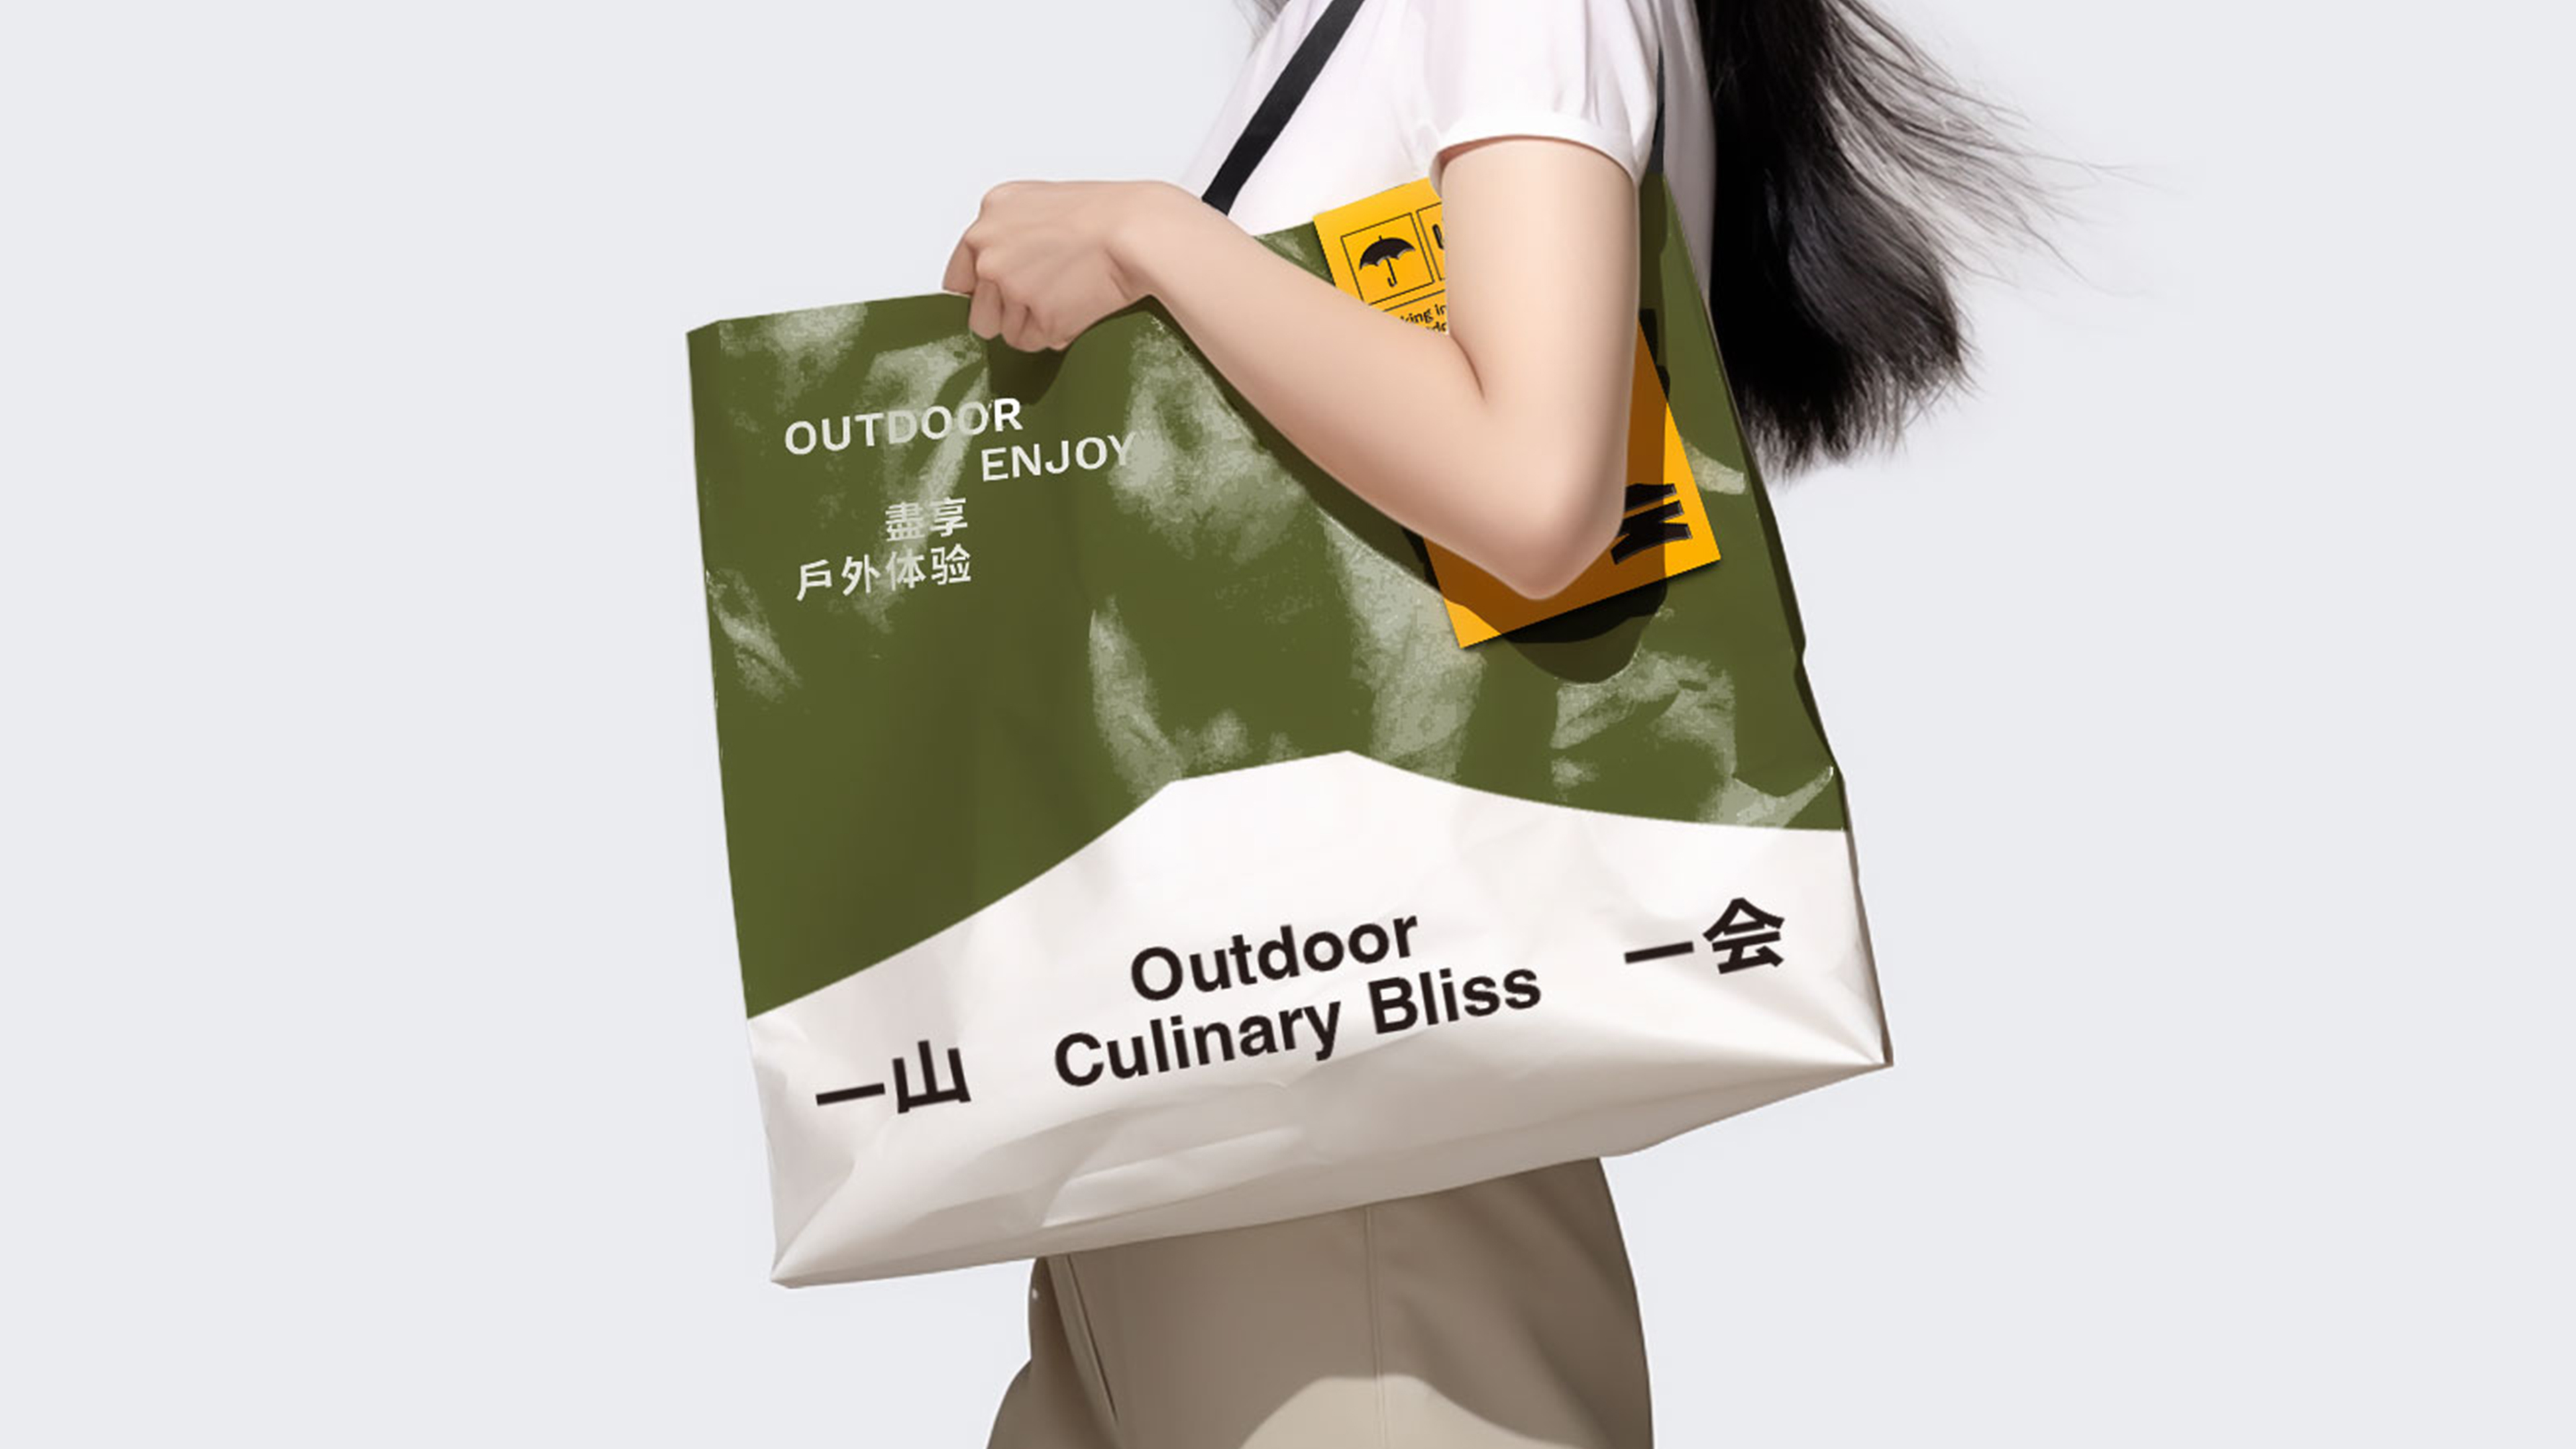 Yi Shan Yi Hui, a Chinese outdoor cooking brand